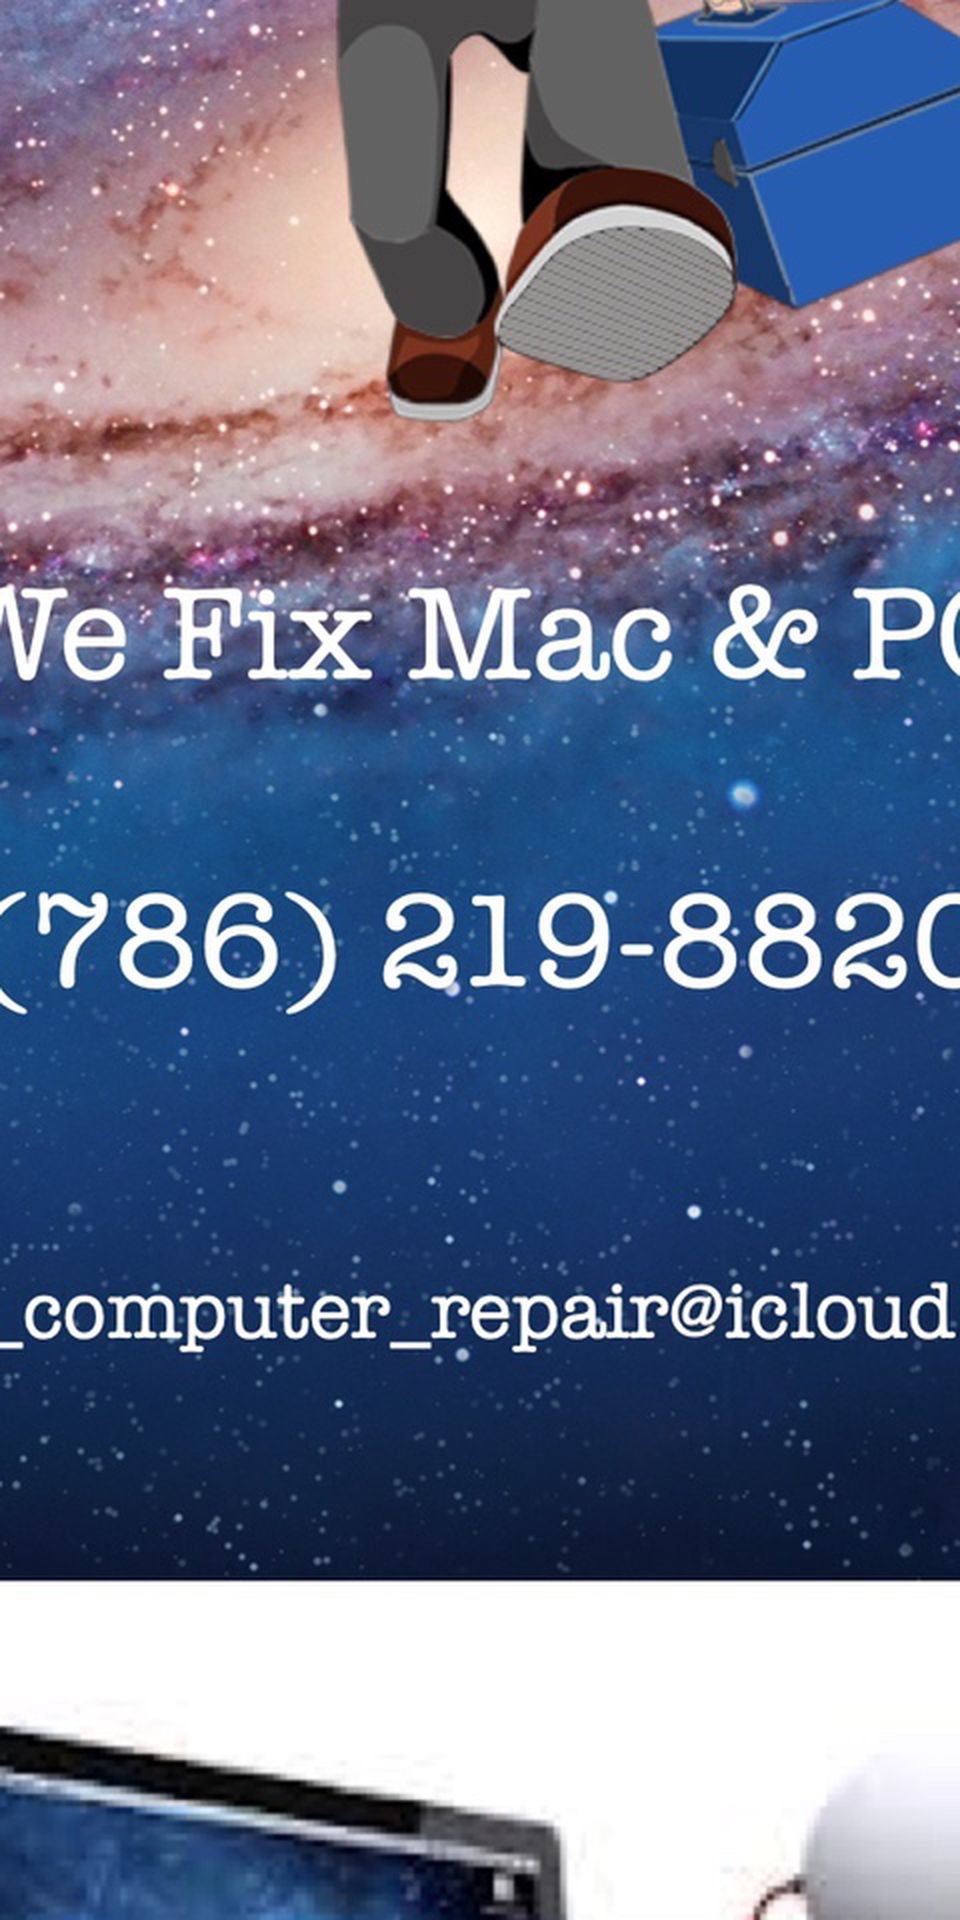 Mac & PC